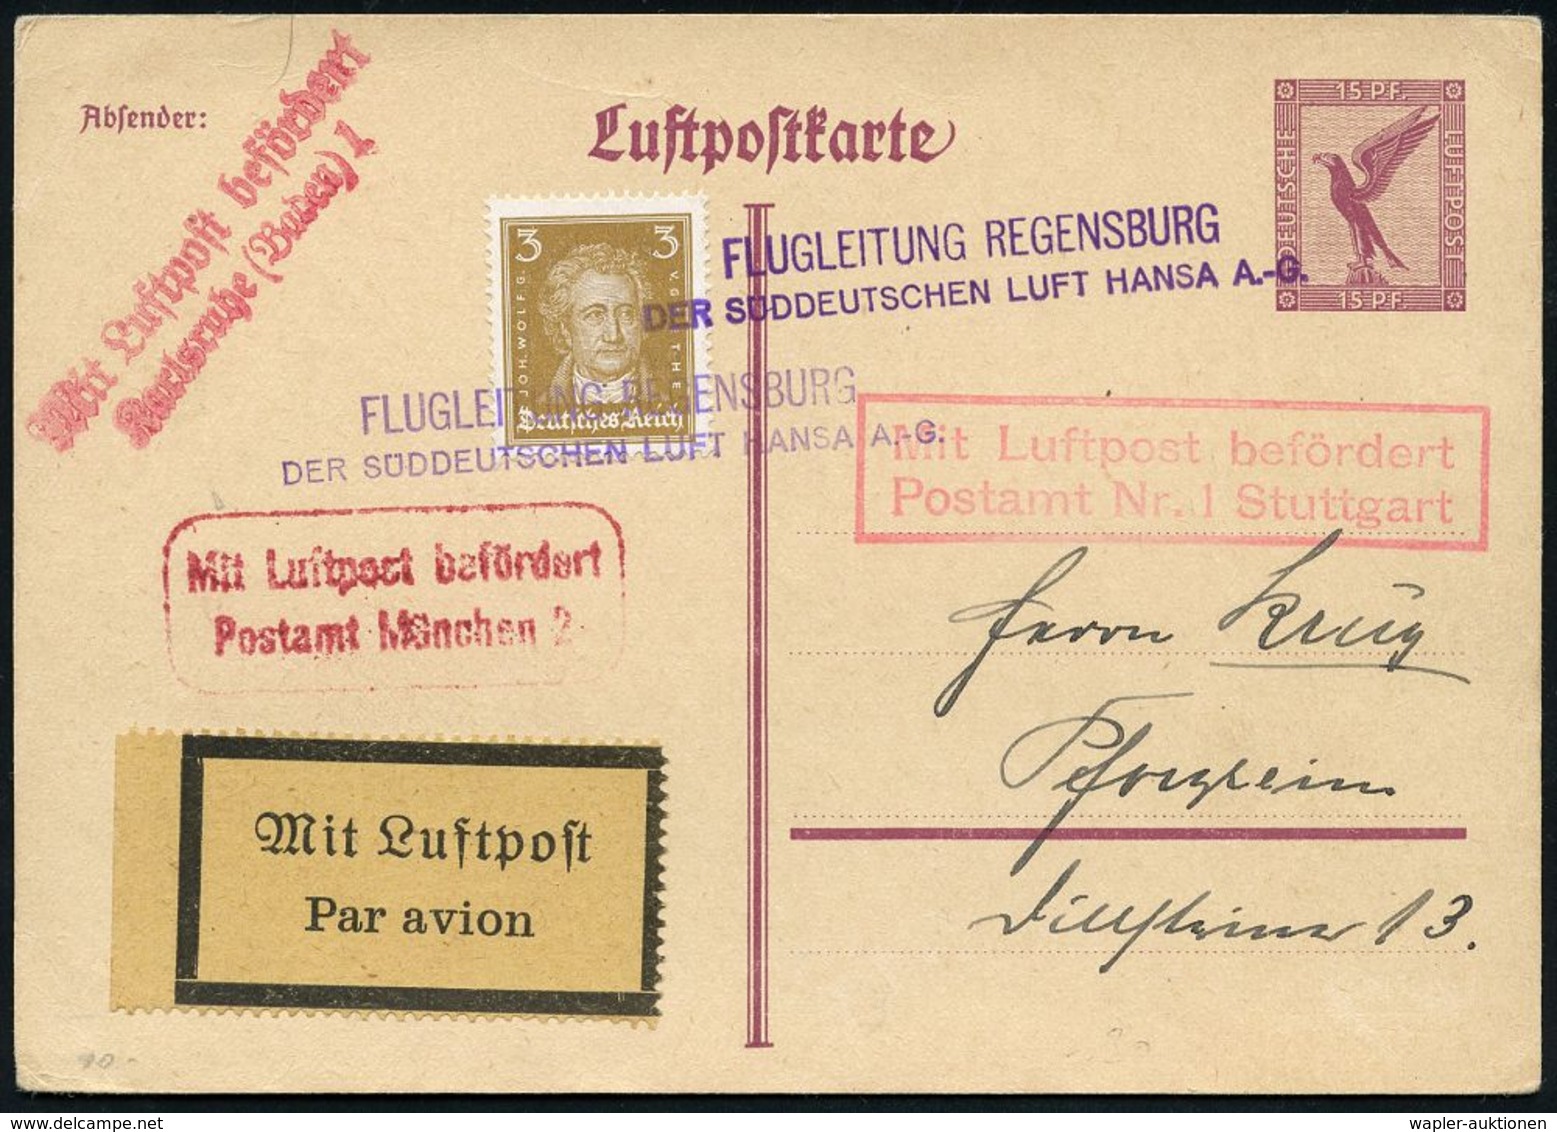 FLUGHAFEN / FLUGHAFEN-POSTÄMTER : Regensburg 1926 (ca.) Viol. 2L: FLUGLEITUNG REGENSBURG/ DER SÜDDEUTSCHEN LUFT HANSA A. - Sonstige (Luft)